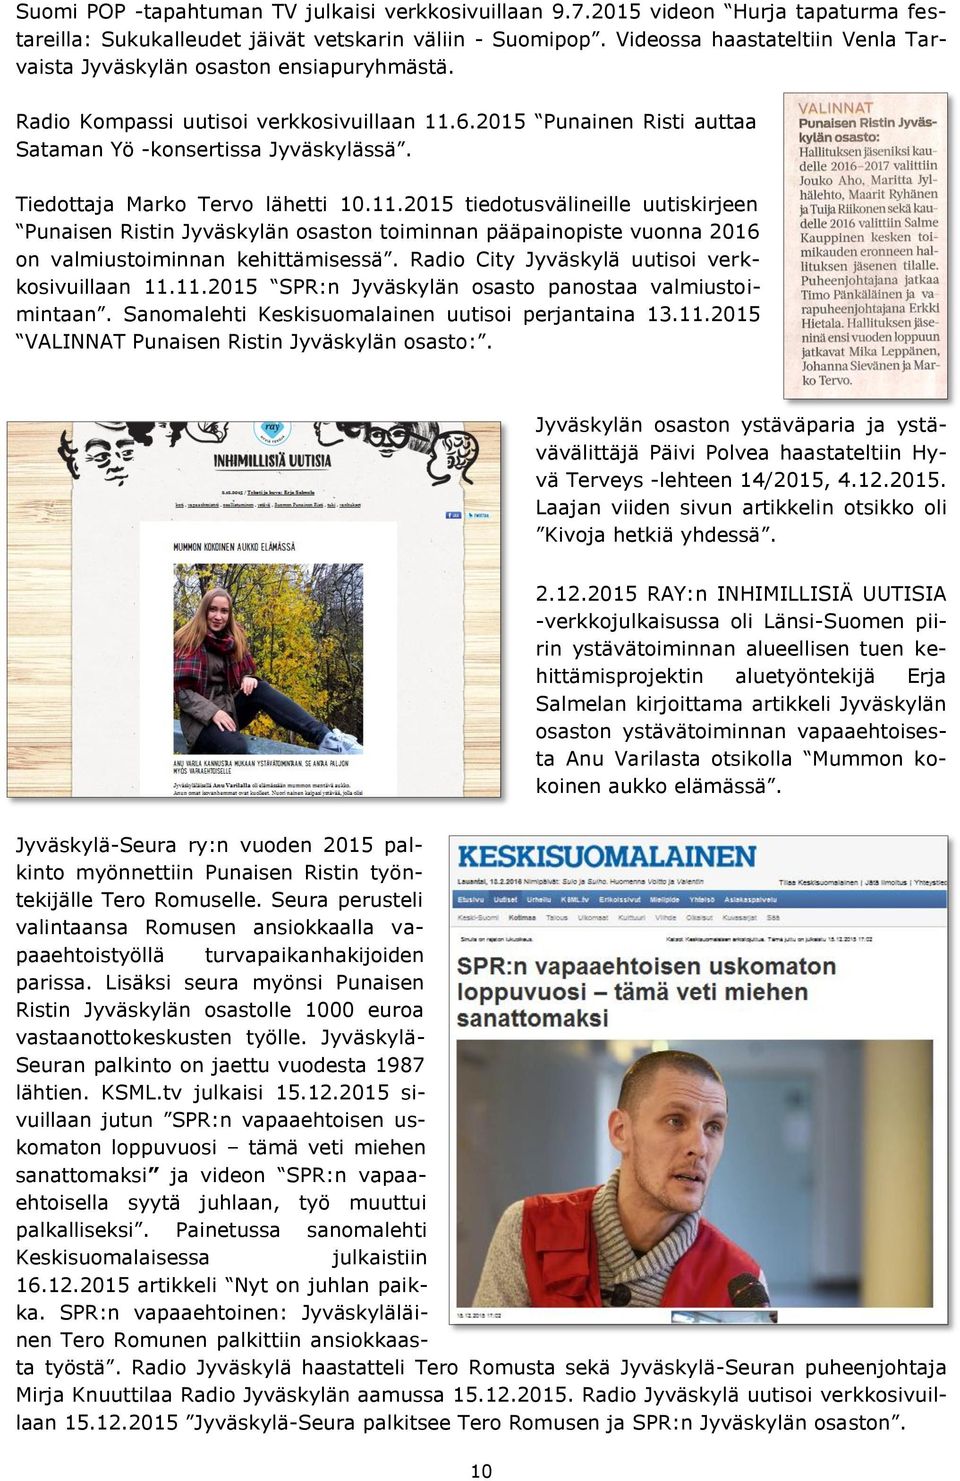 Tiedottaja Marko Tervo lähetti 10.11.2015 tiedotusvälineille uutiskirjeen Punaisen Ristin Jyväskylän osaston toiminnan pääpainopiste vuonna 2016 on valmiustoiminnan kehittämisessä.